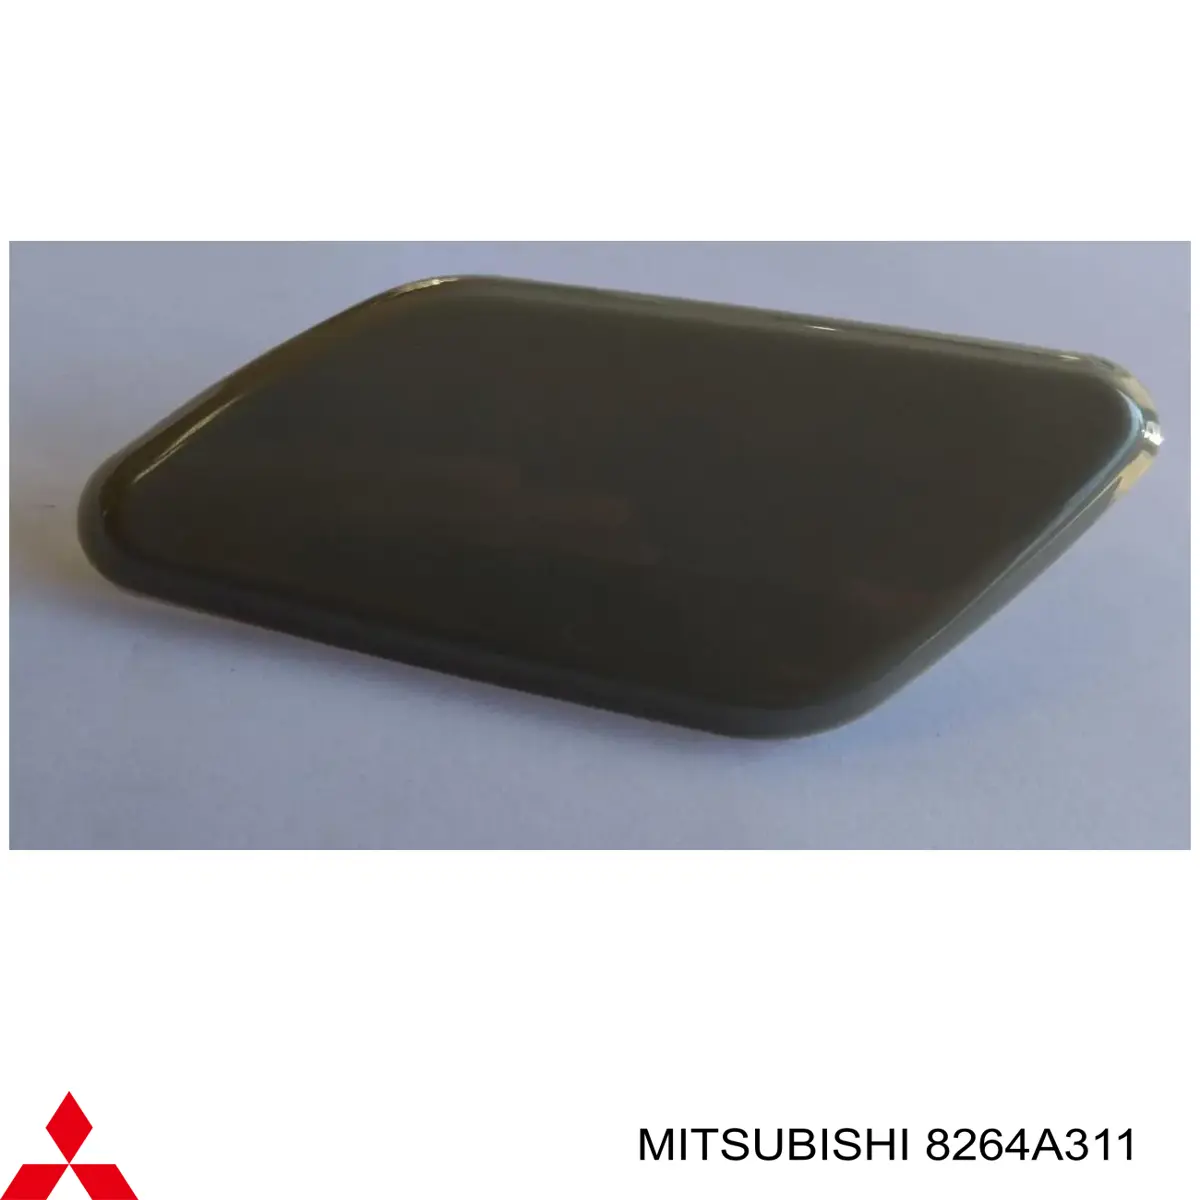 8264A311 Mitsubishi